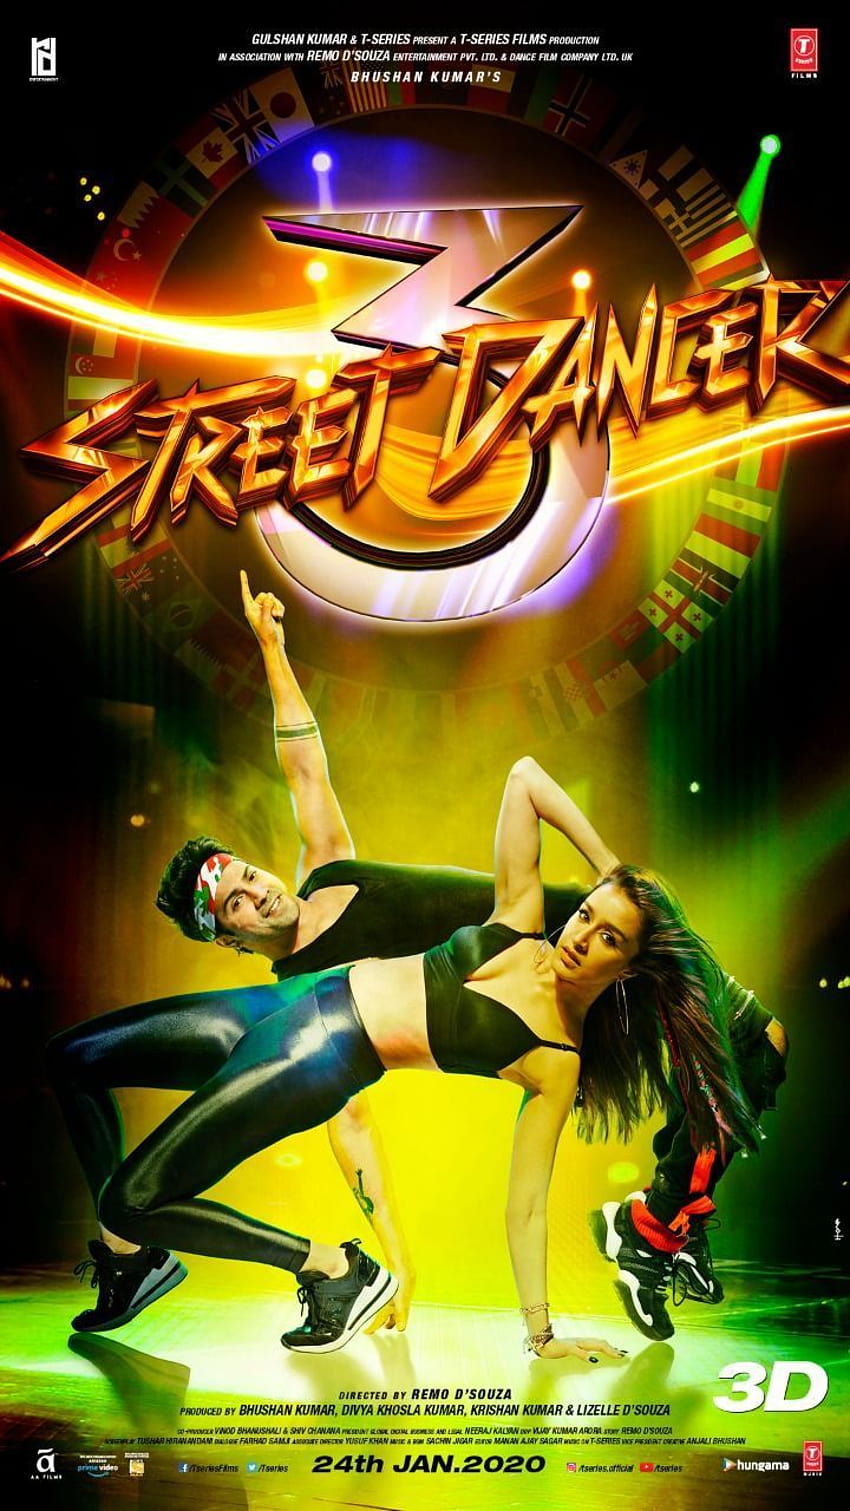 Street Dancer 3D HD phone wallpaper | Pxfuel